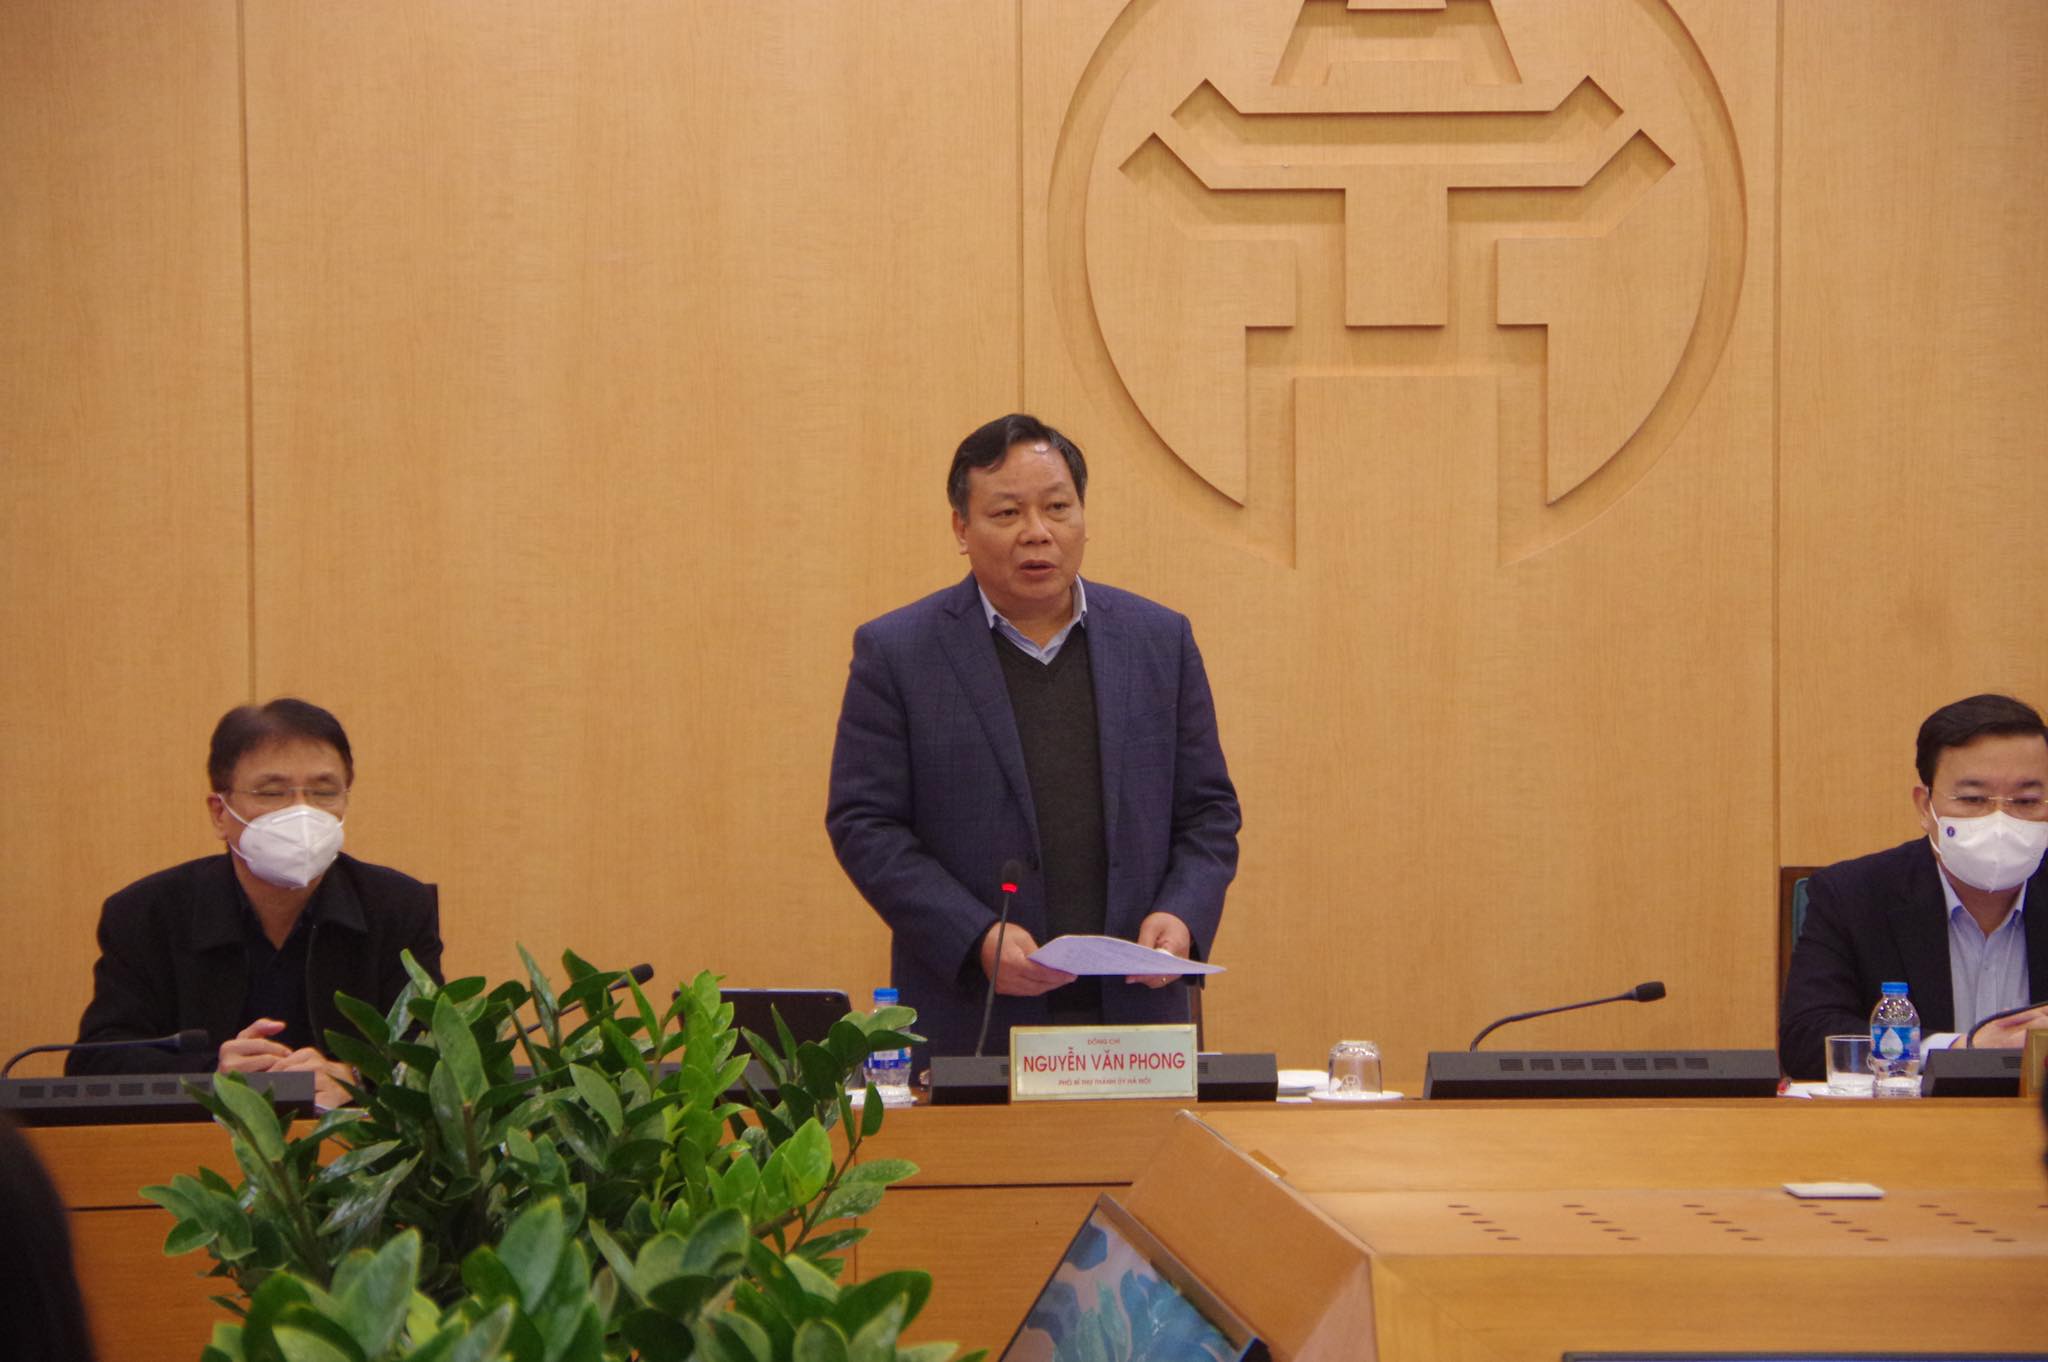 Phó Bí thư Thành ủy Hà Nội Nguyễn Văn Phong phát biểu tại phiên họp